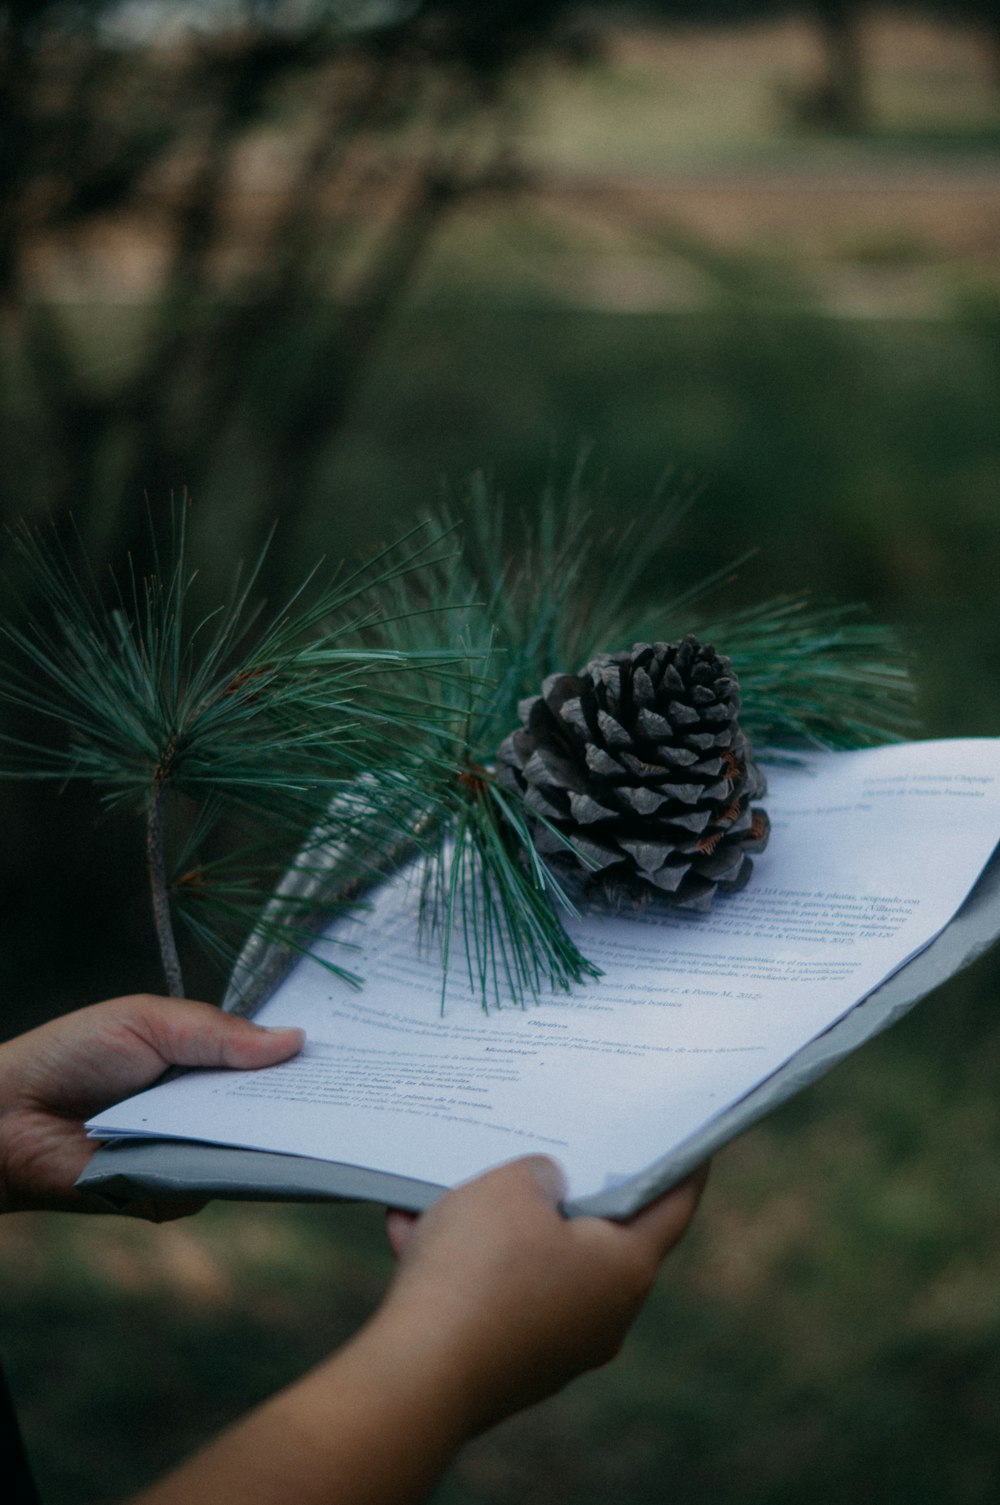 Una persona sosteniendo un libro con un cono de pino encima.